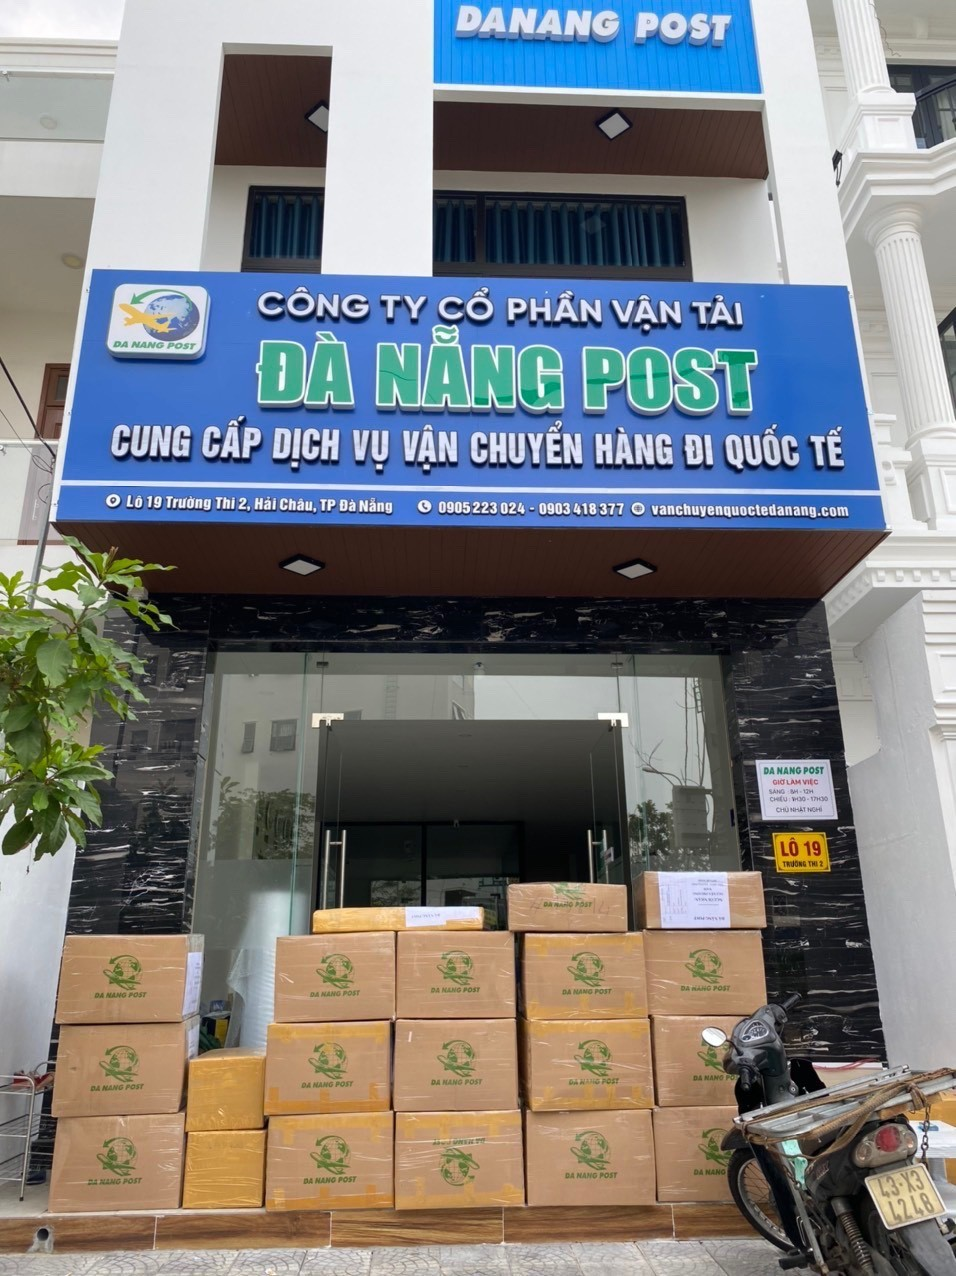 Danang Post 